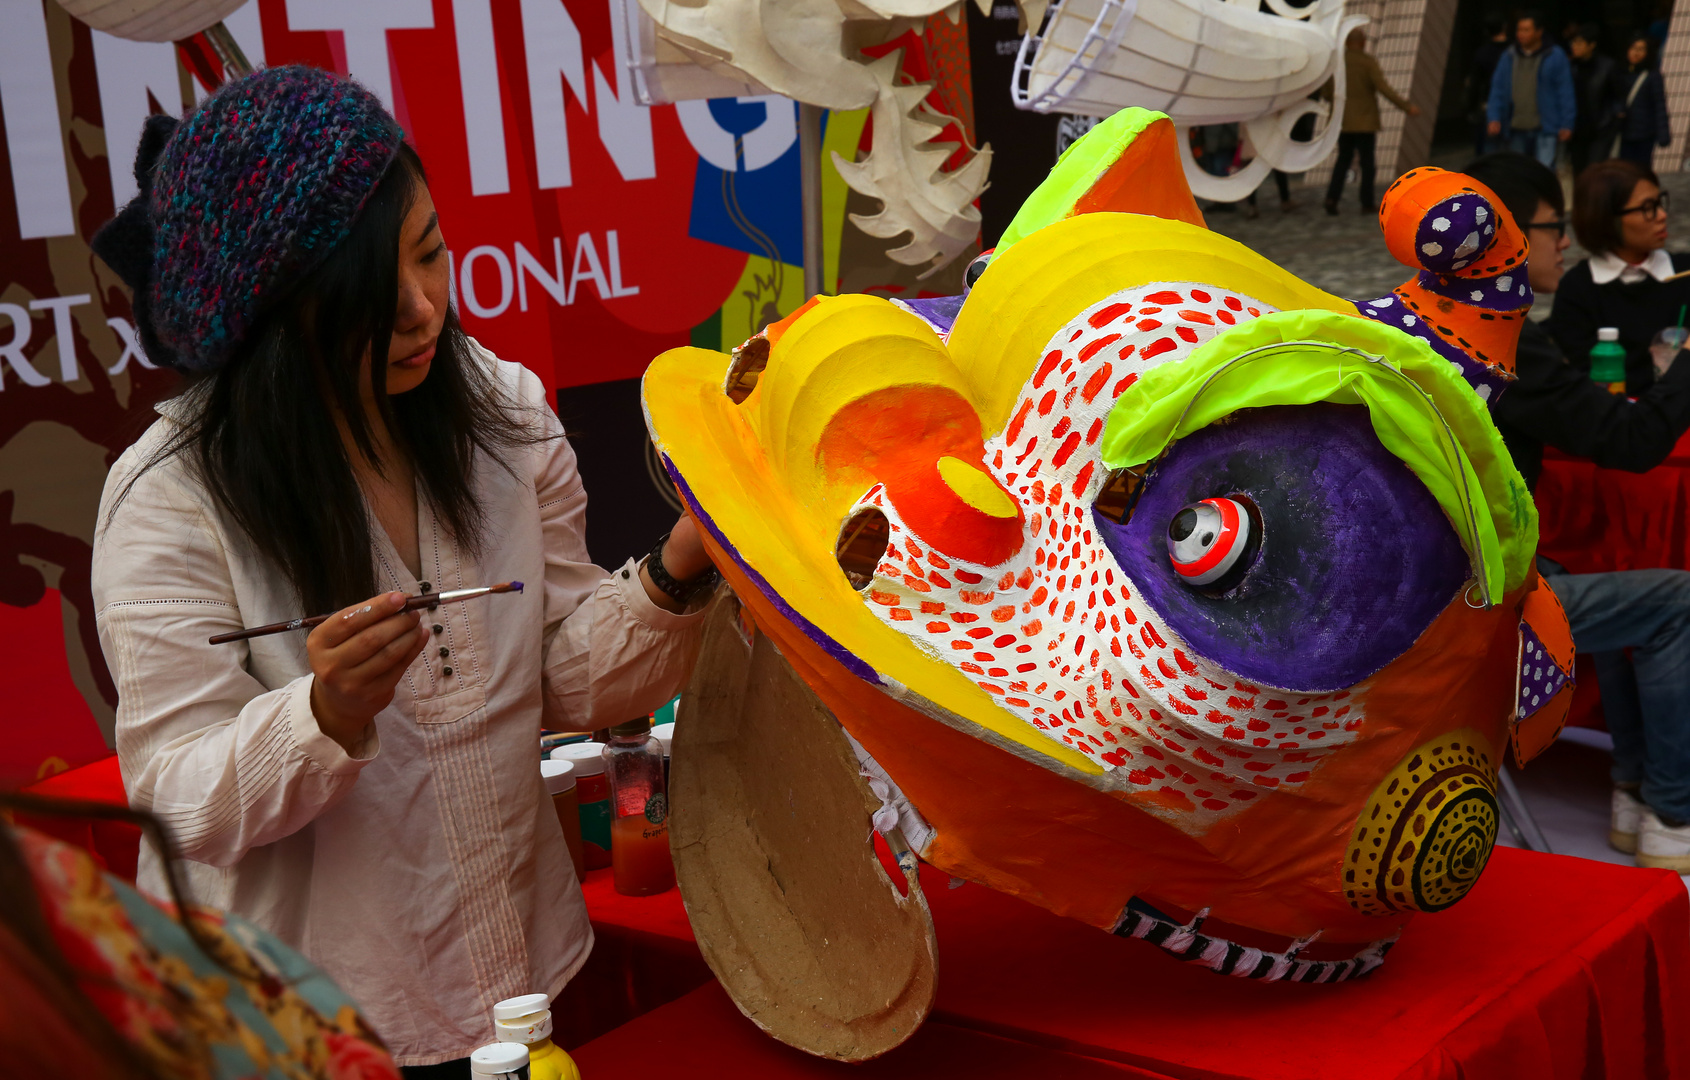 Löwen und Drachenfest in Hong Kong 2013 Maskenbildner(in)